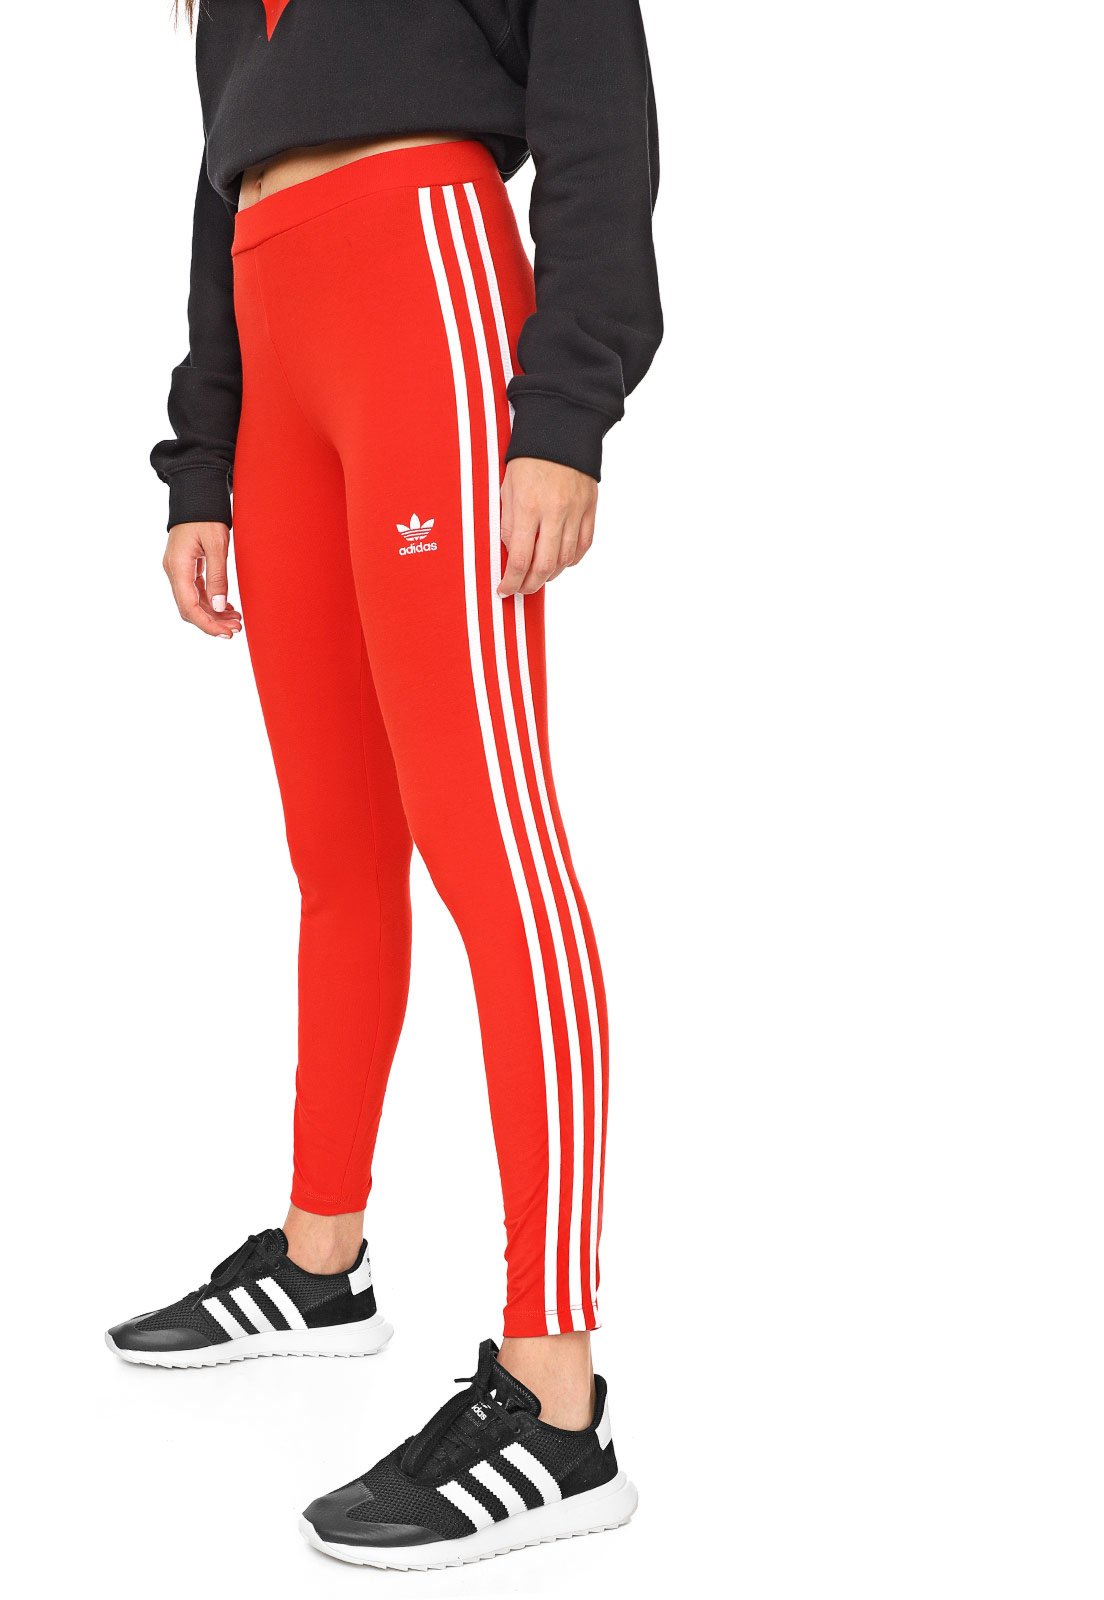 Legging adidas Originals 3 Stripes Tight Vermelha - Compre Agora